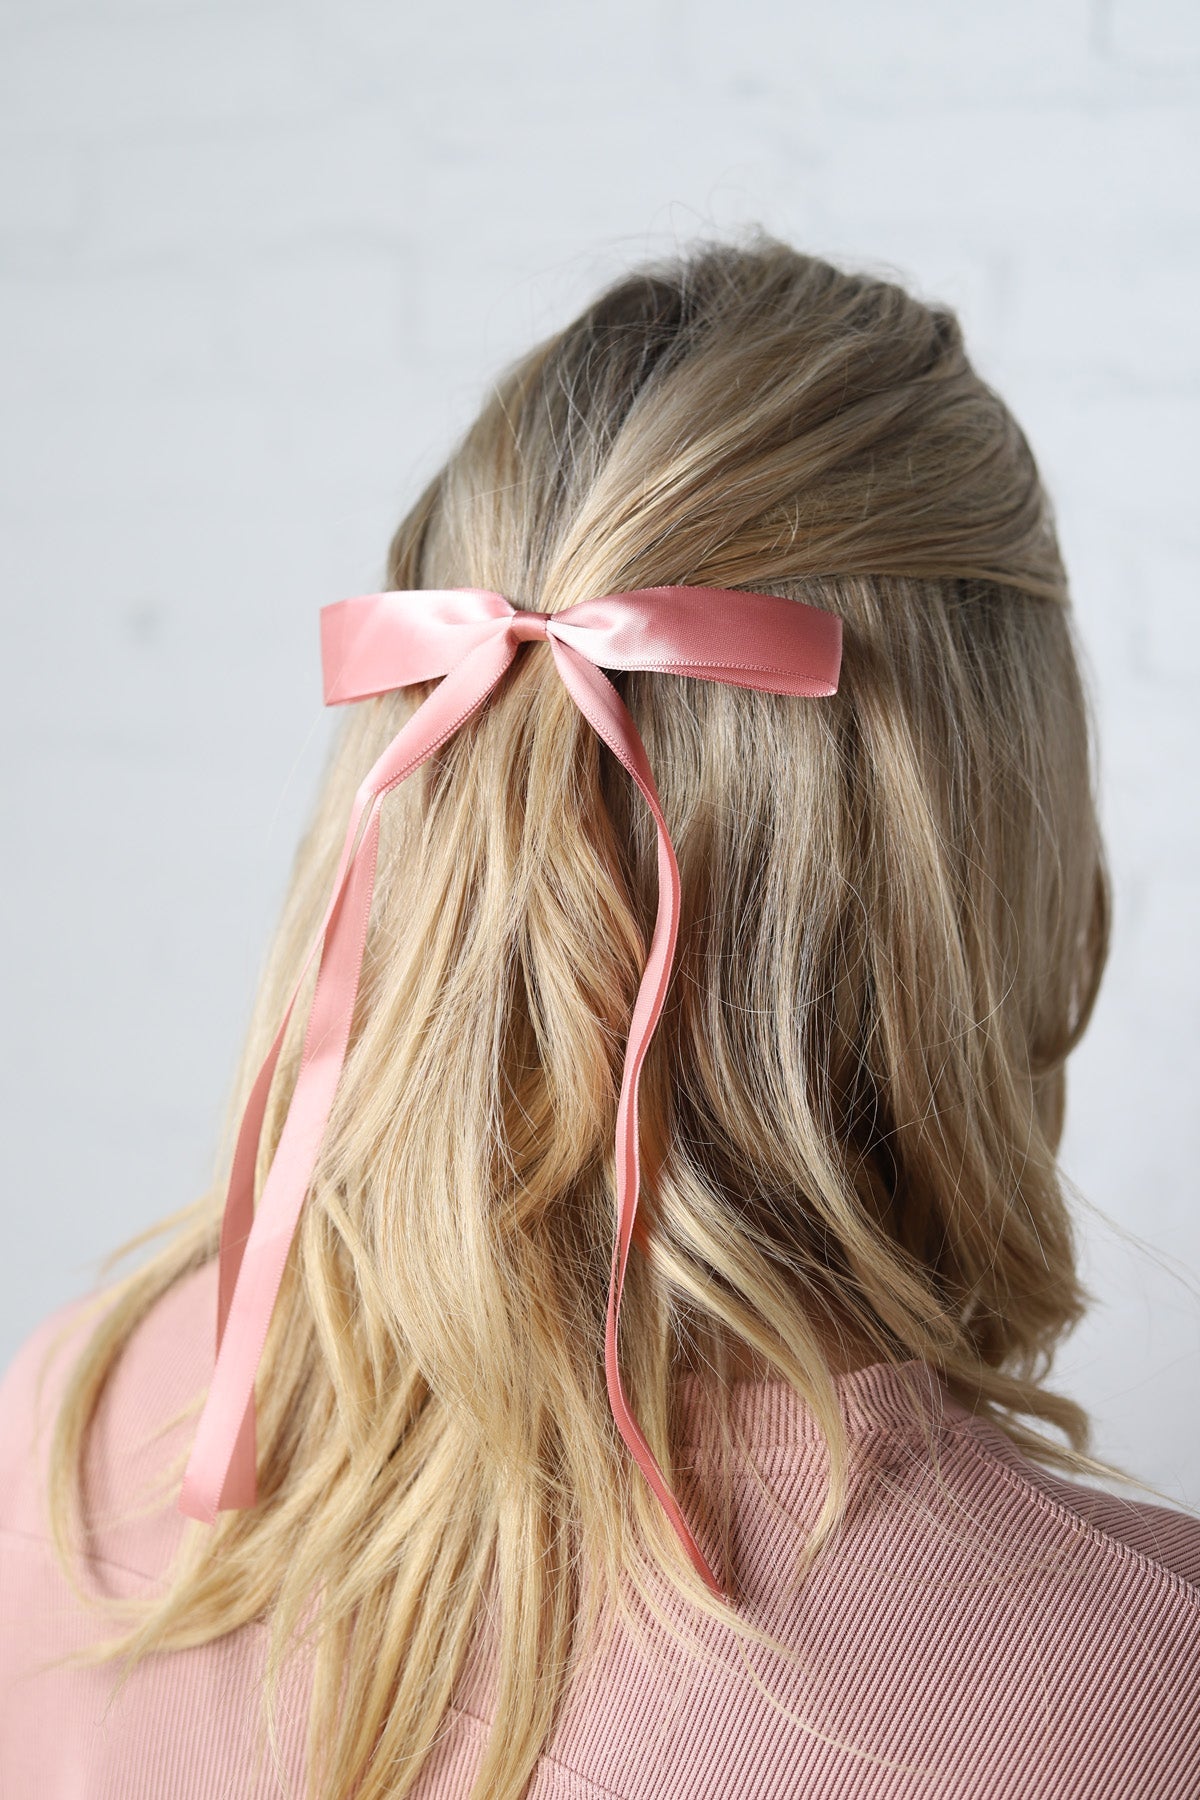 Dahlia Dainty Hair Bow Clip - Light Pink